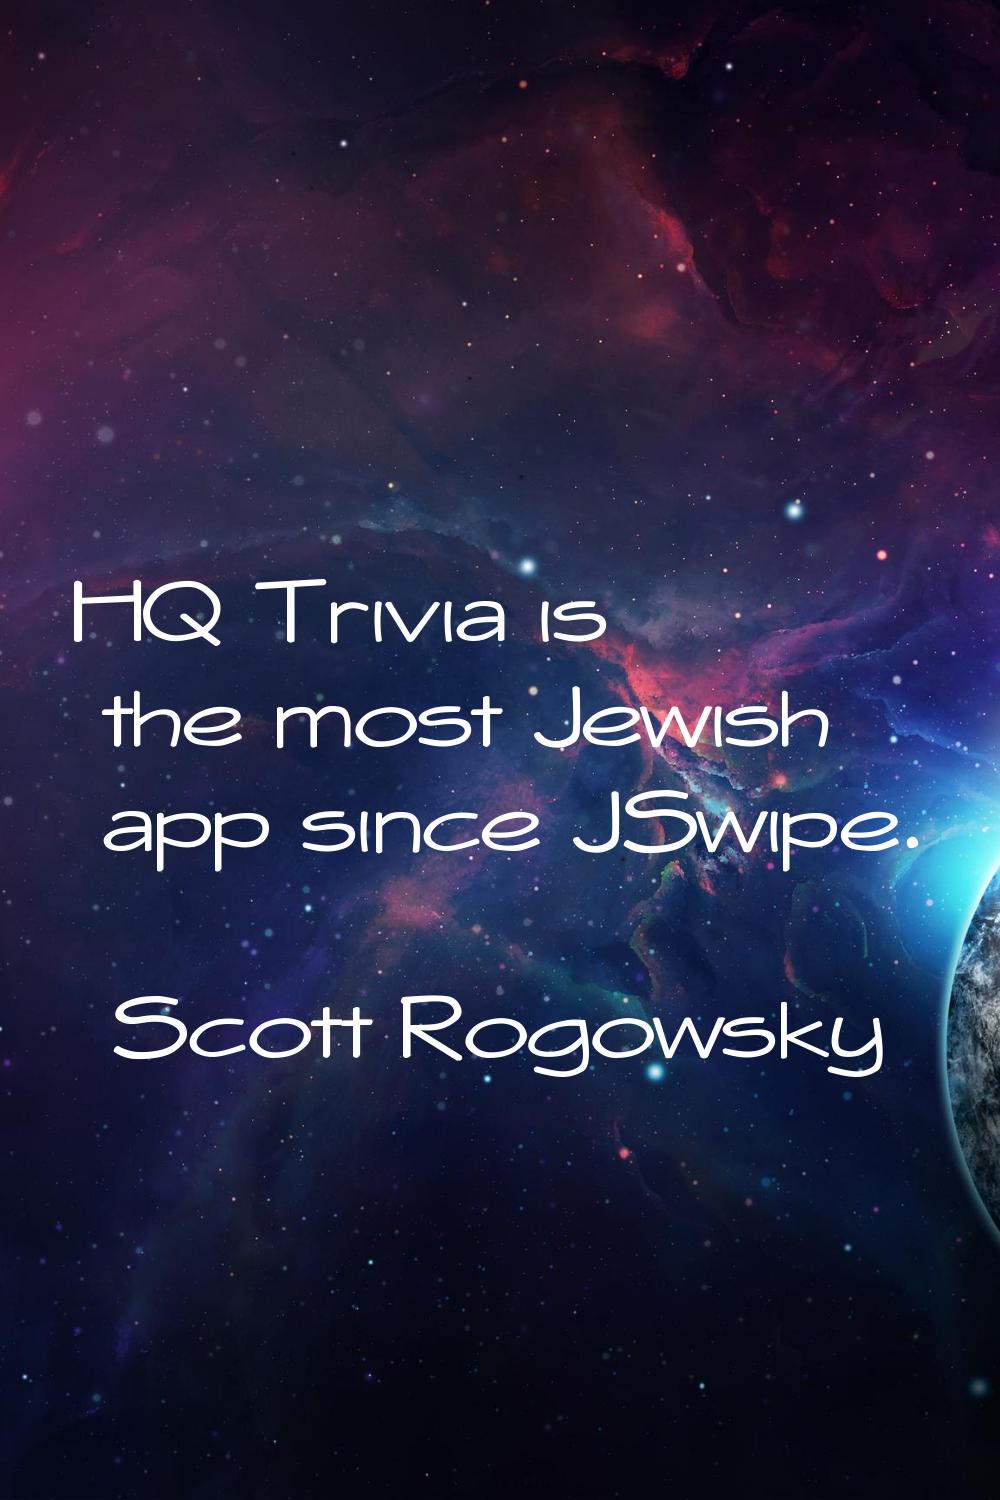 HQ Trivia is the most Jewish app since JSwipe.